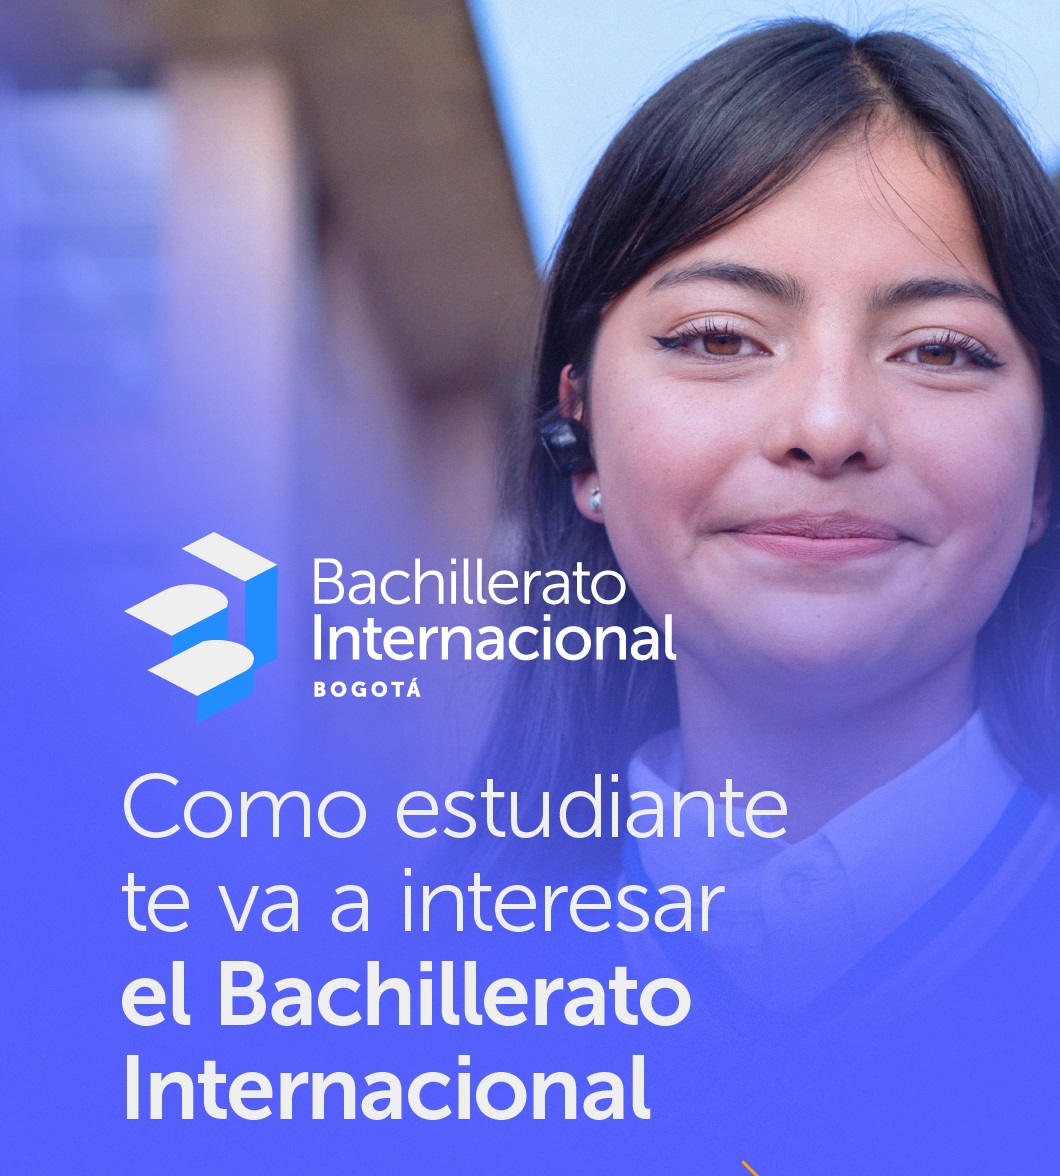 Bachillerato Internacional una oportunidad gratuita para estudiantes.